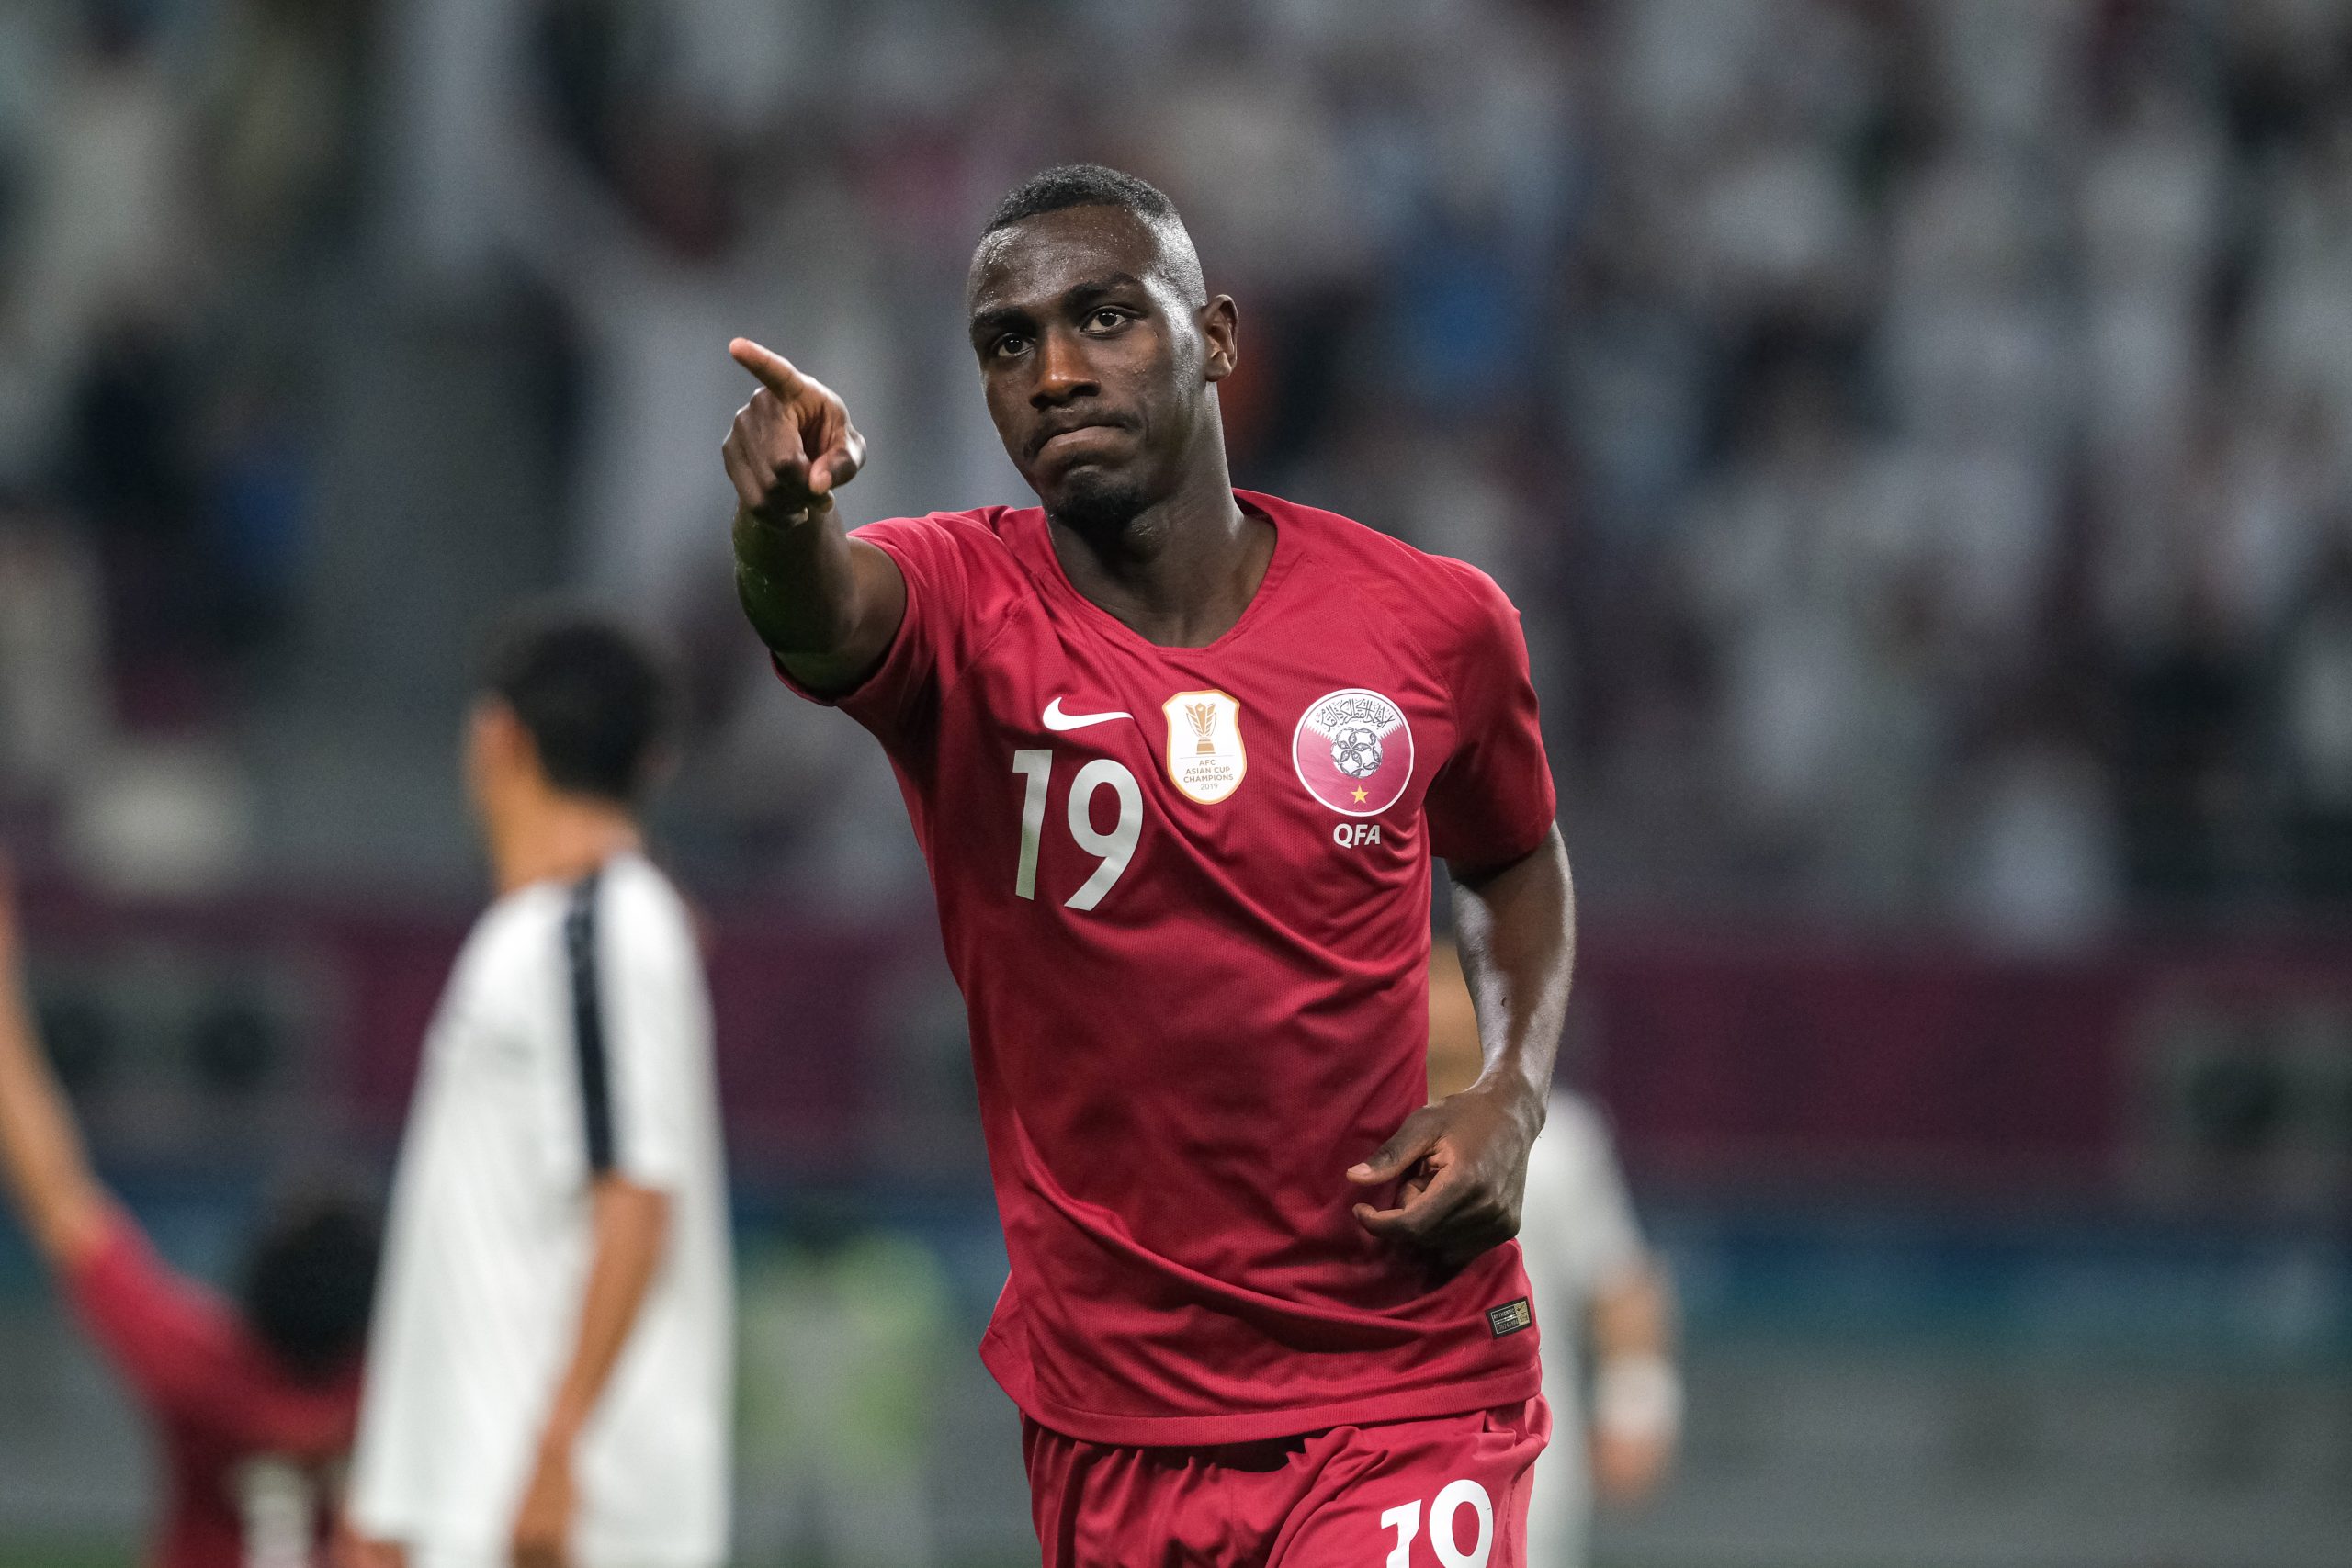 Asian Stars to Shine in FIFA World Cup Qatar 2022